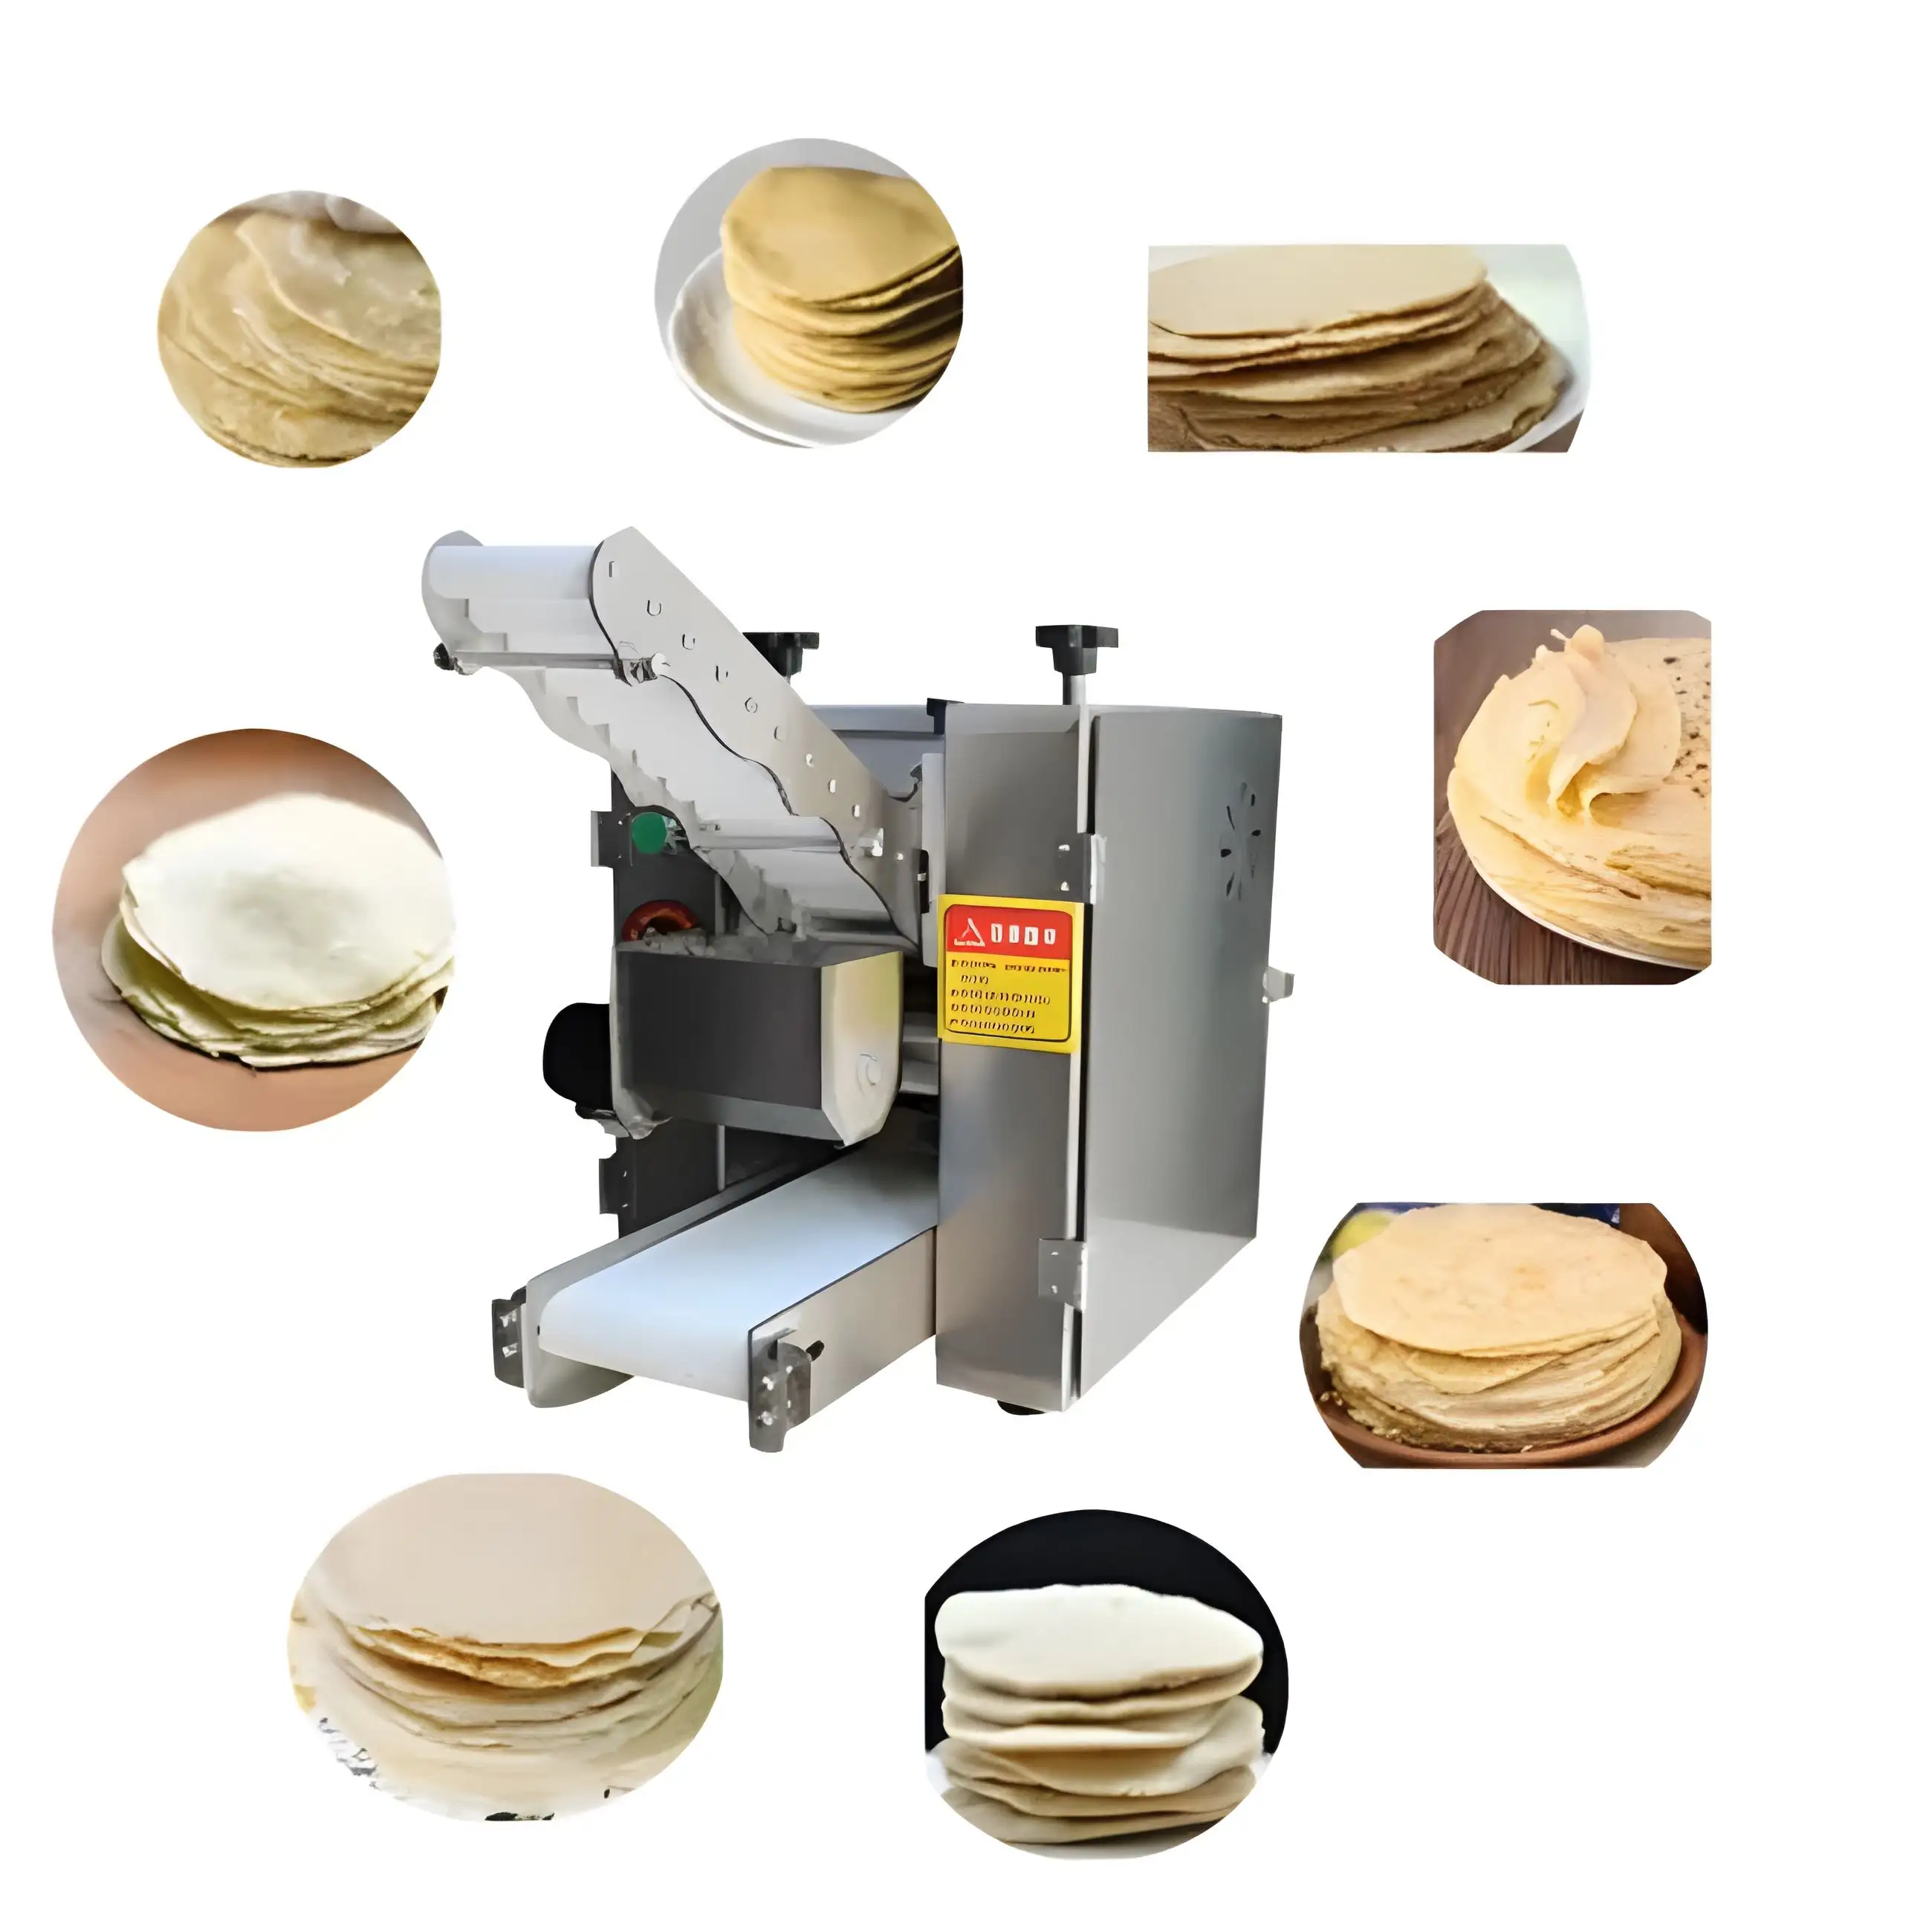 फूड शॉप रोटी मशीन / टॉर्टिला / मोमो / लाचा पराठा / चपाती बनाने की मशीन रोटी ब्रेड मेकर